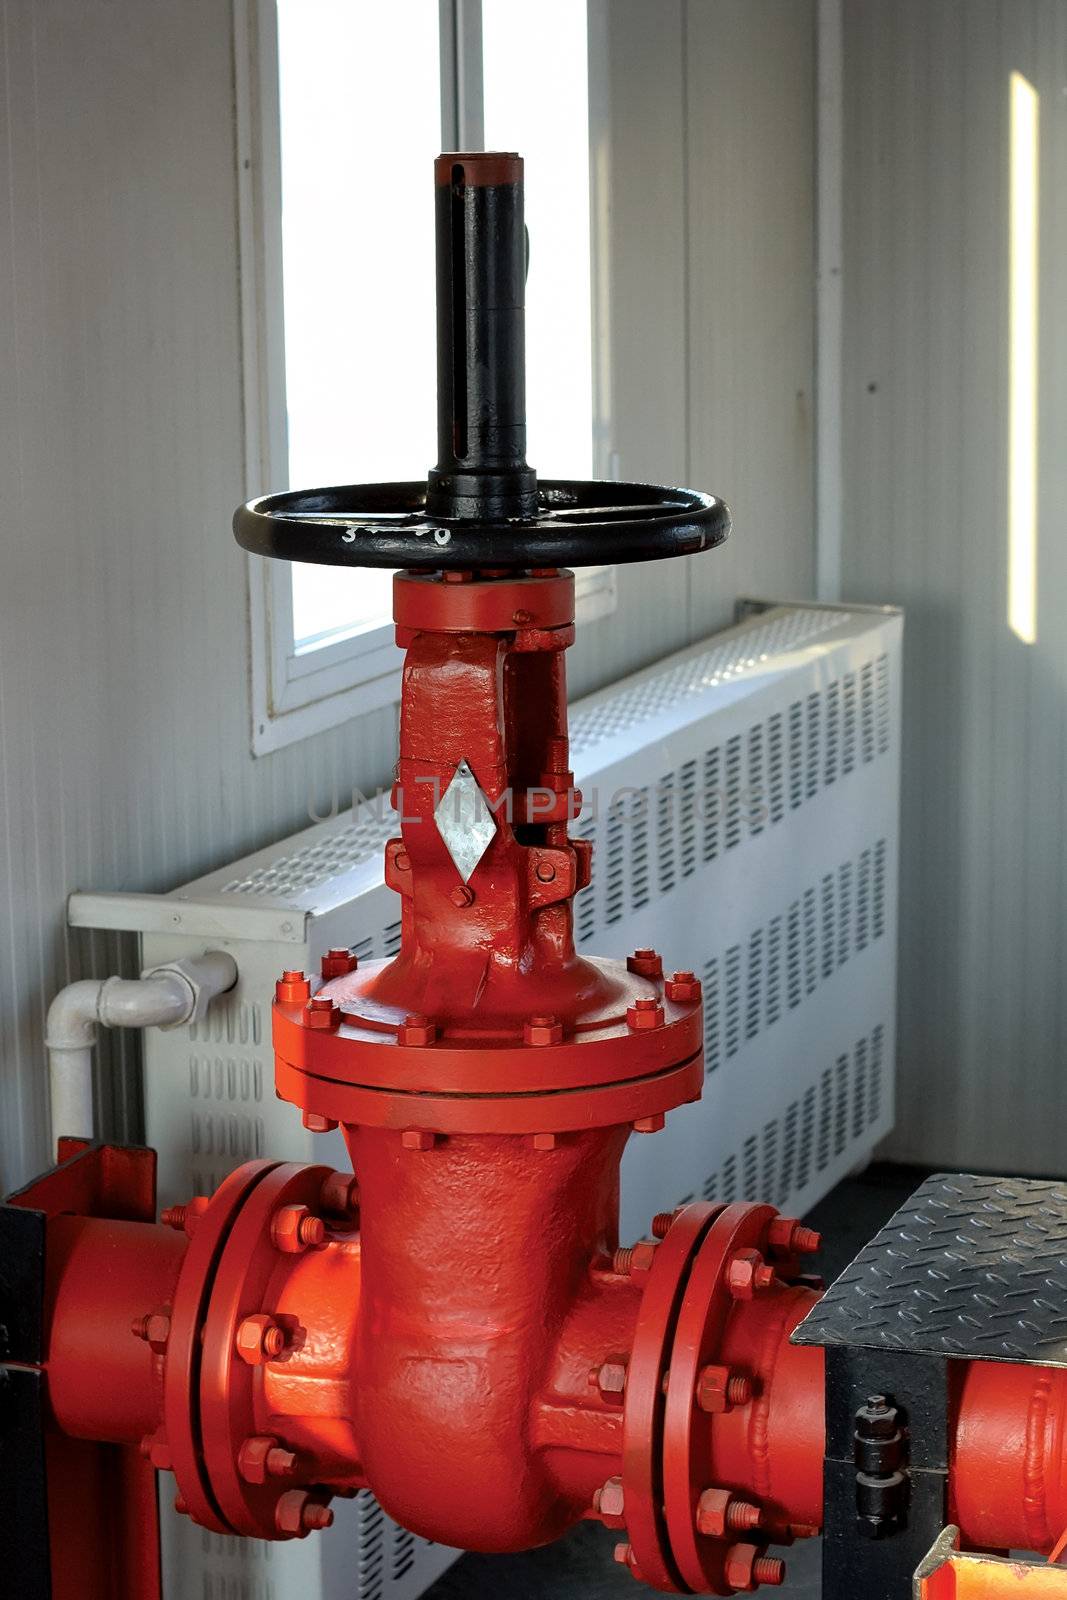 Red regulator valve for firefighting by ekipaj